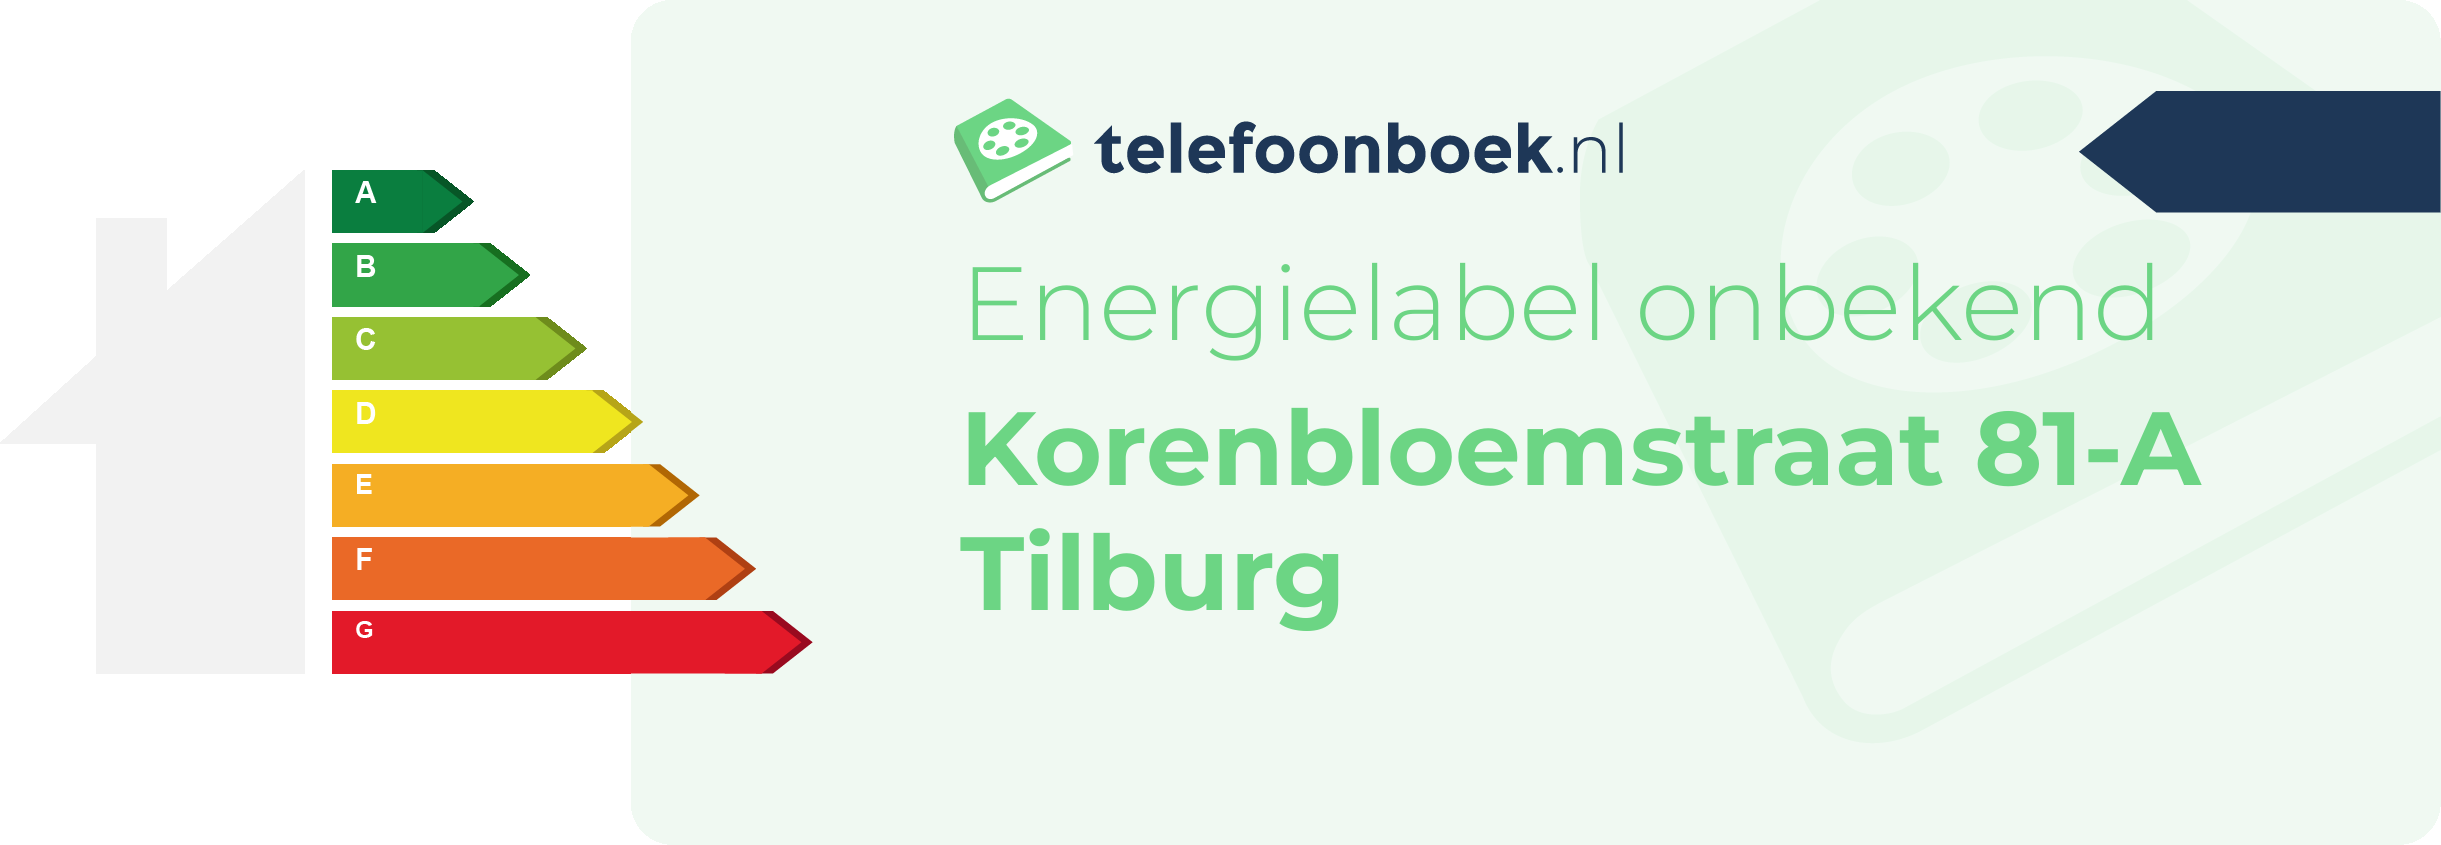 Energielabel Korenbloemstraat 81-A Tilburg